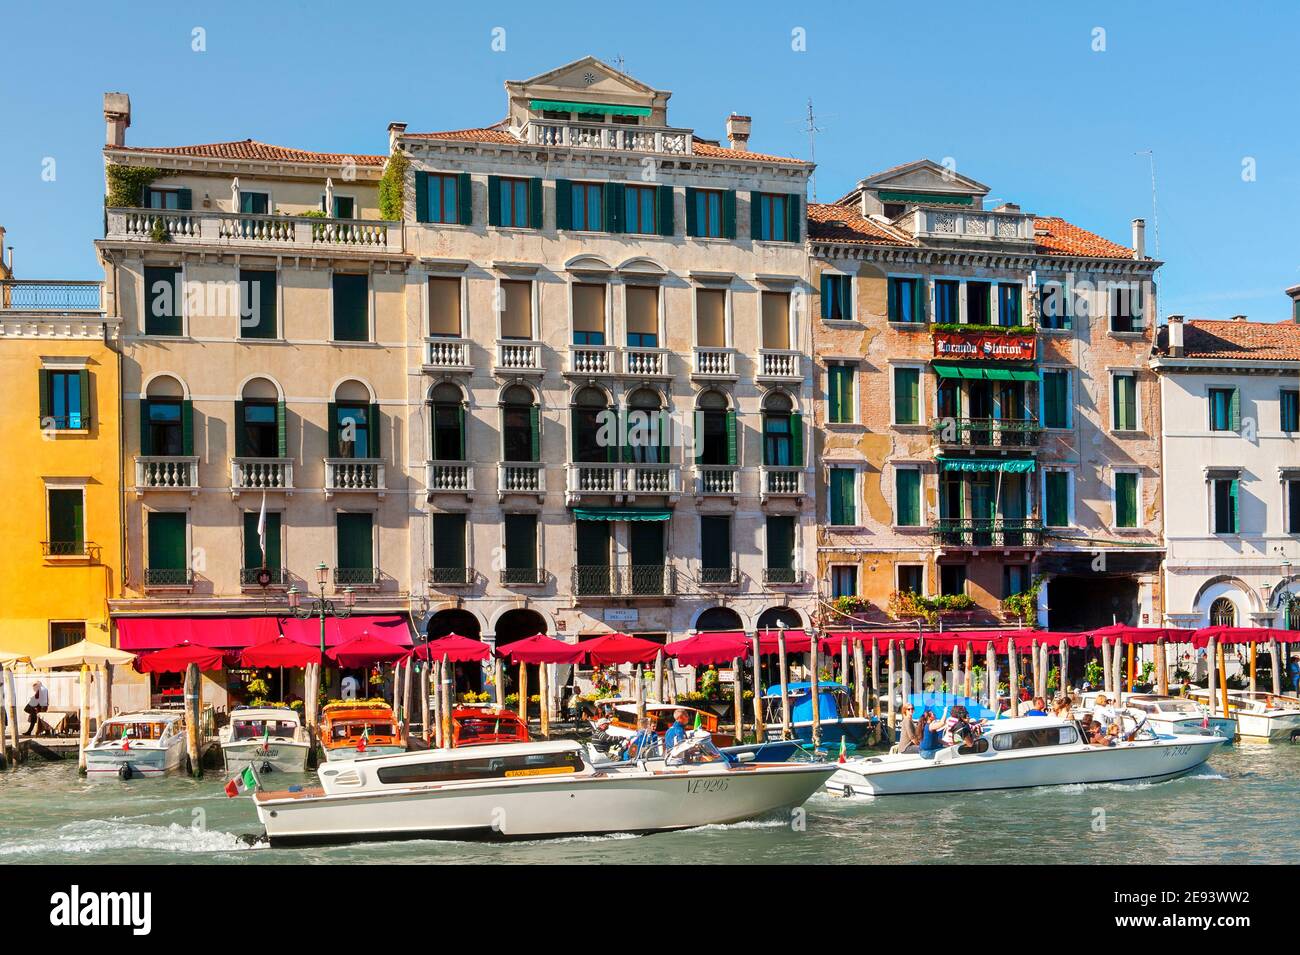 Motoscafi su un canale nella bellissima città di Venezia, Italia. Foto Stock